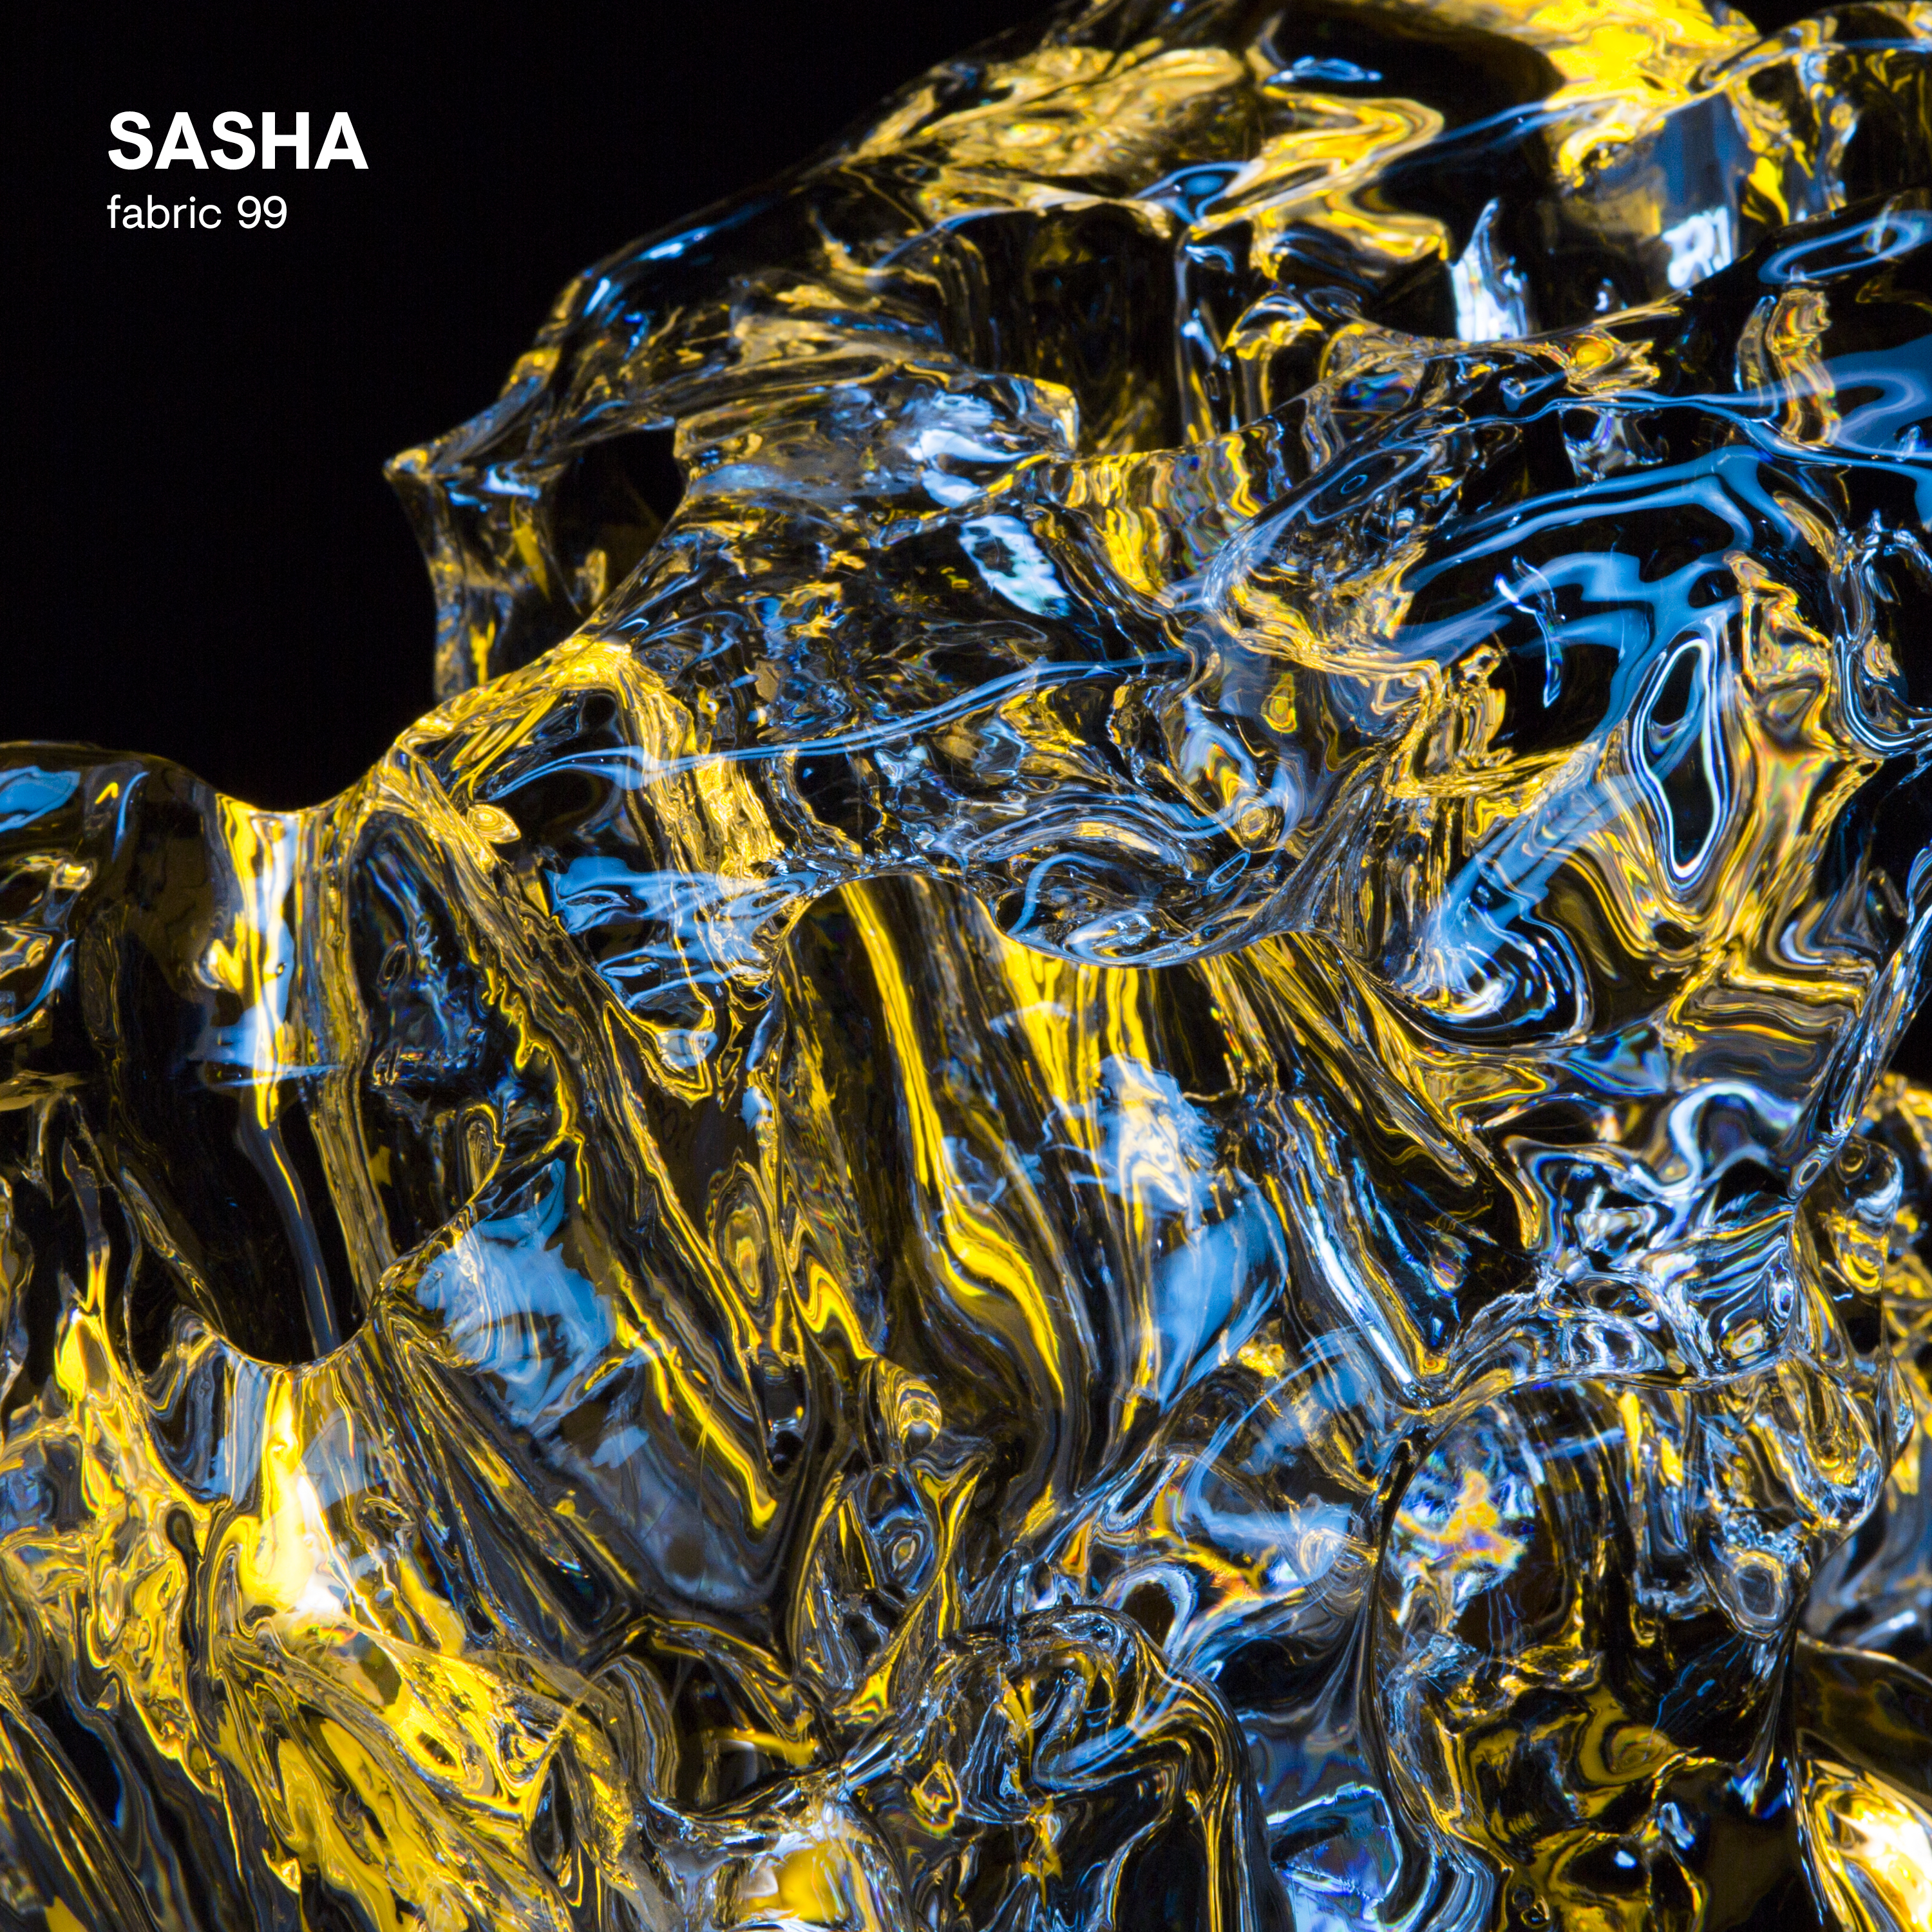 fabric 99: Sasha (Continuous DJ Mix)